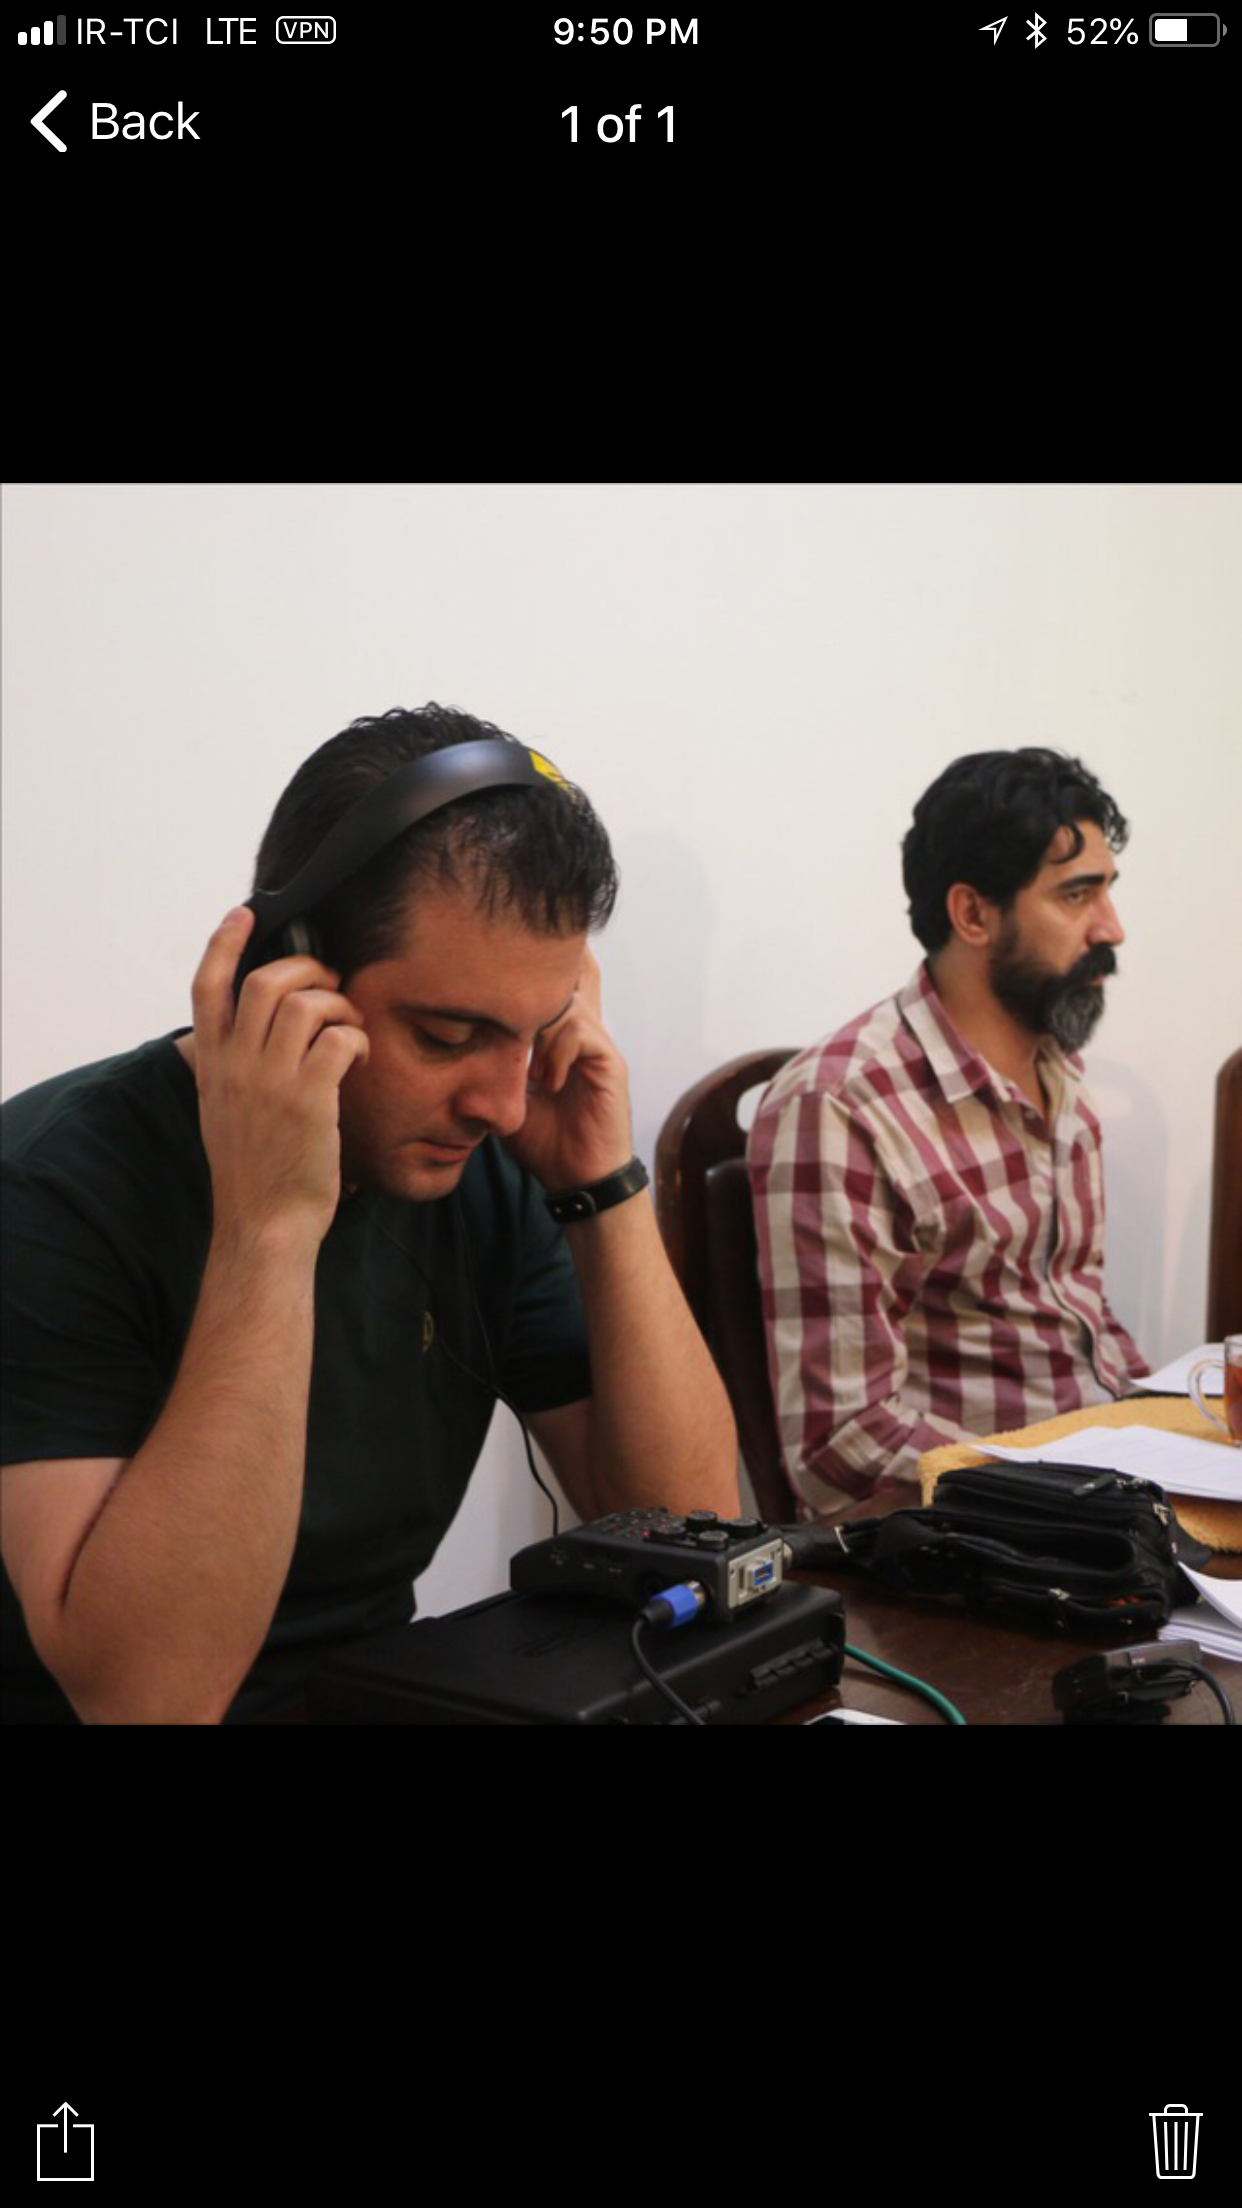 تصویری از کامران مبشری، مجری سینما و تلویزیون در حال بازیگری سر صحنه یکی از آثارش